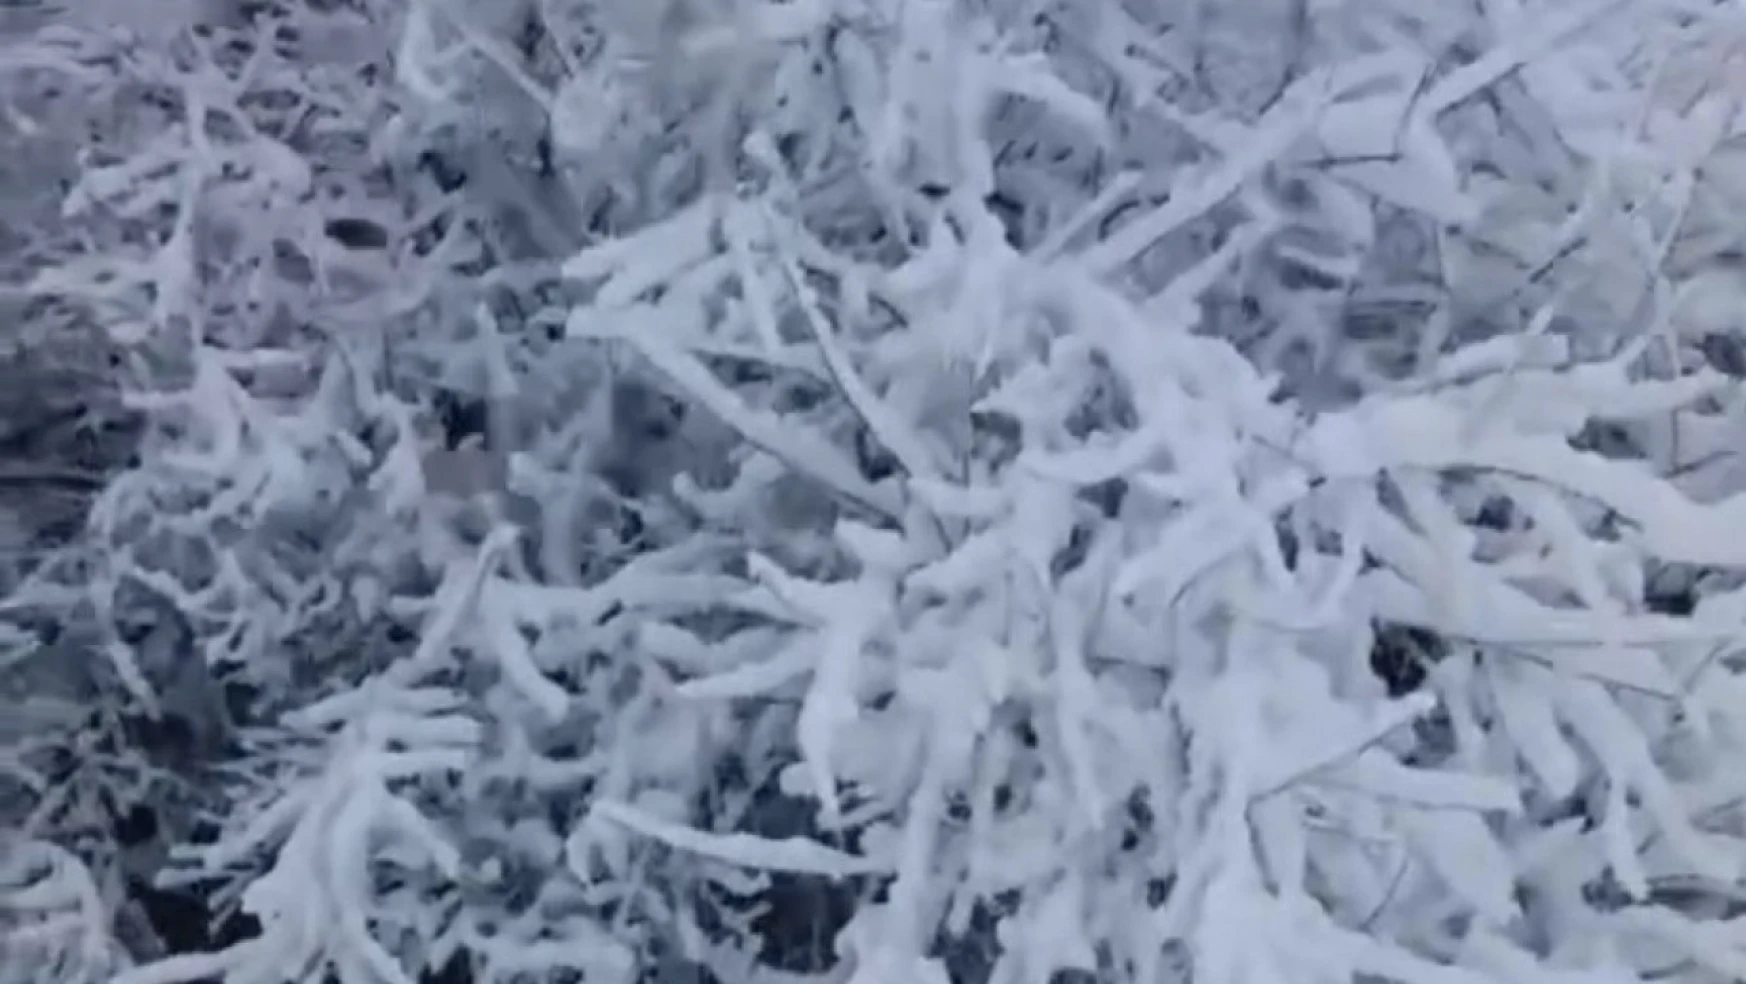 Elazığ Baskil'de kar yağışı etkili oldu